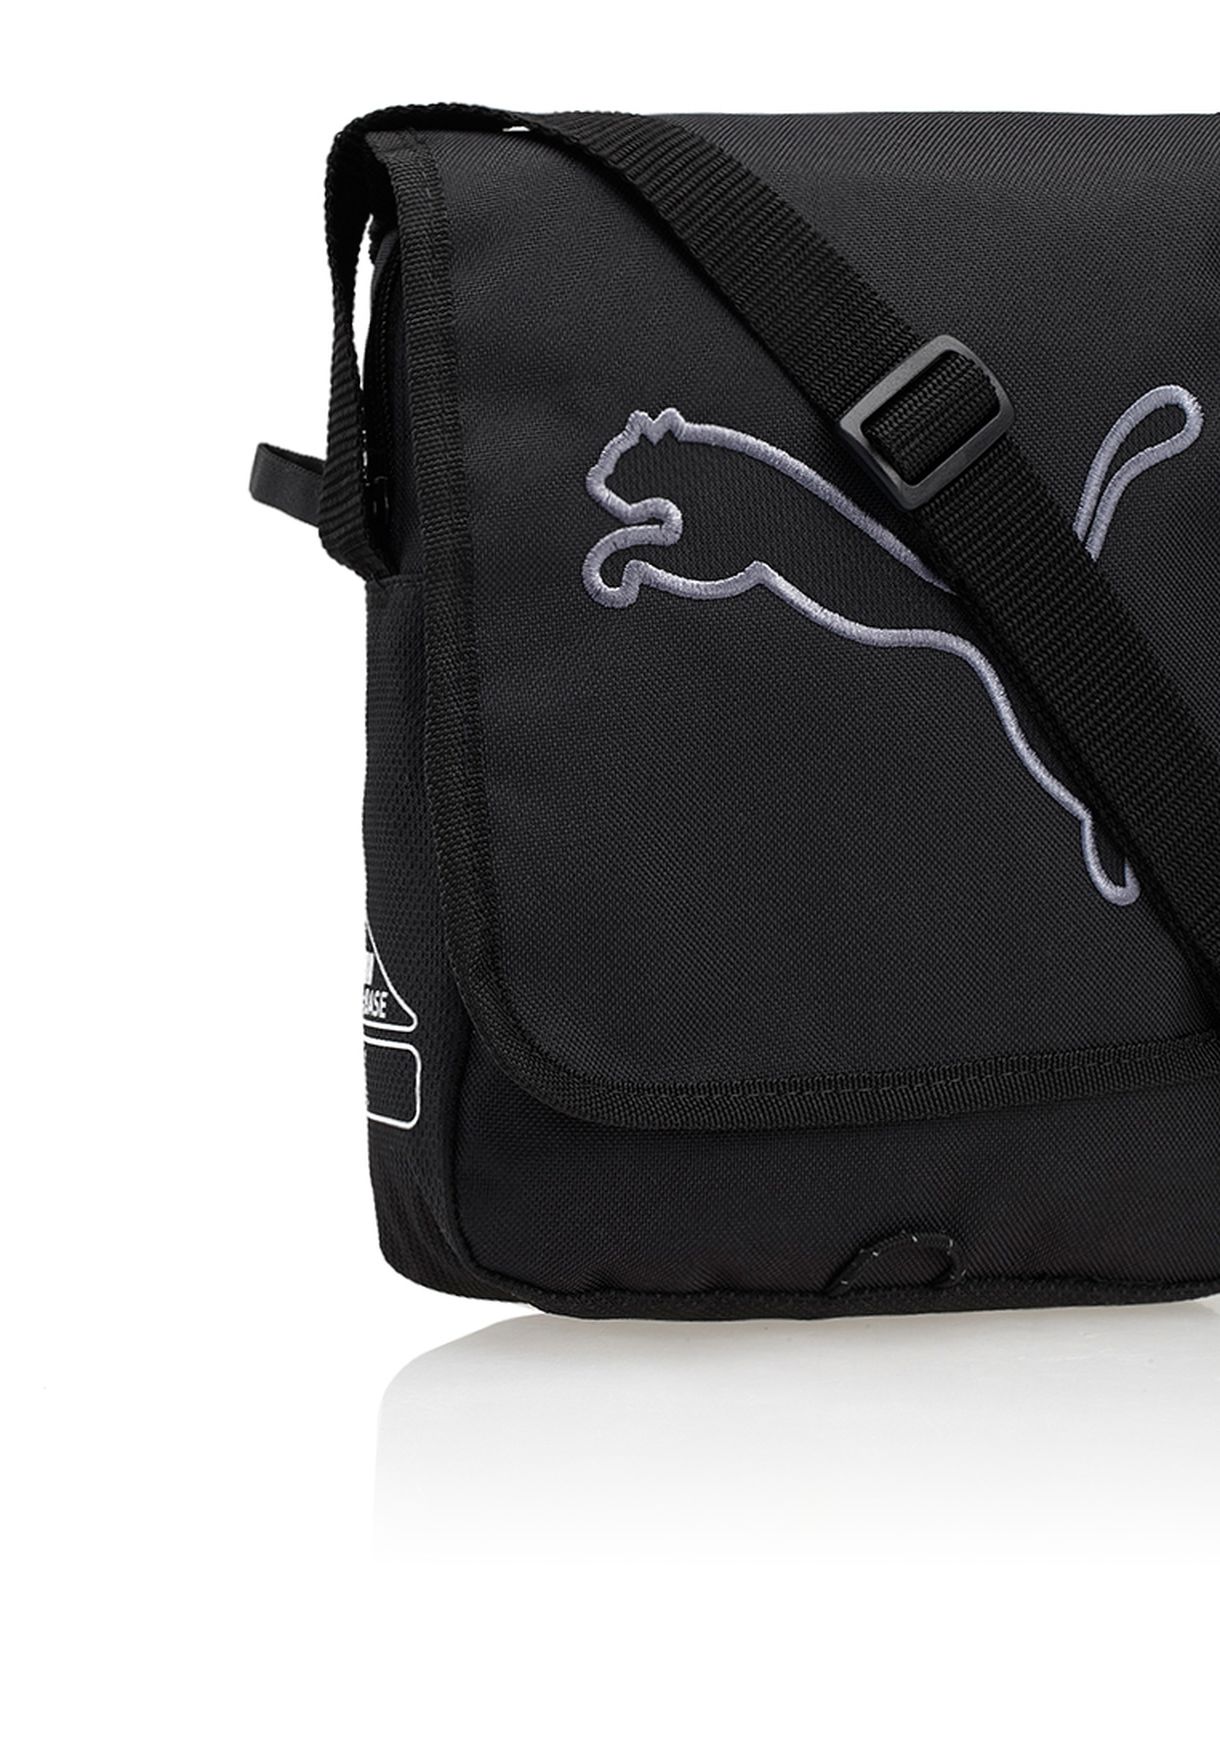 Buy Puma Black Big Cat Portable Bag for 